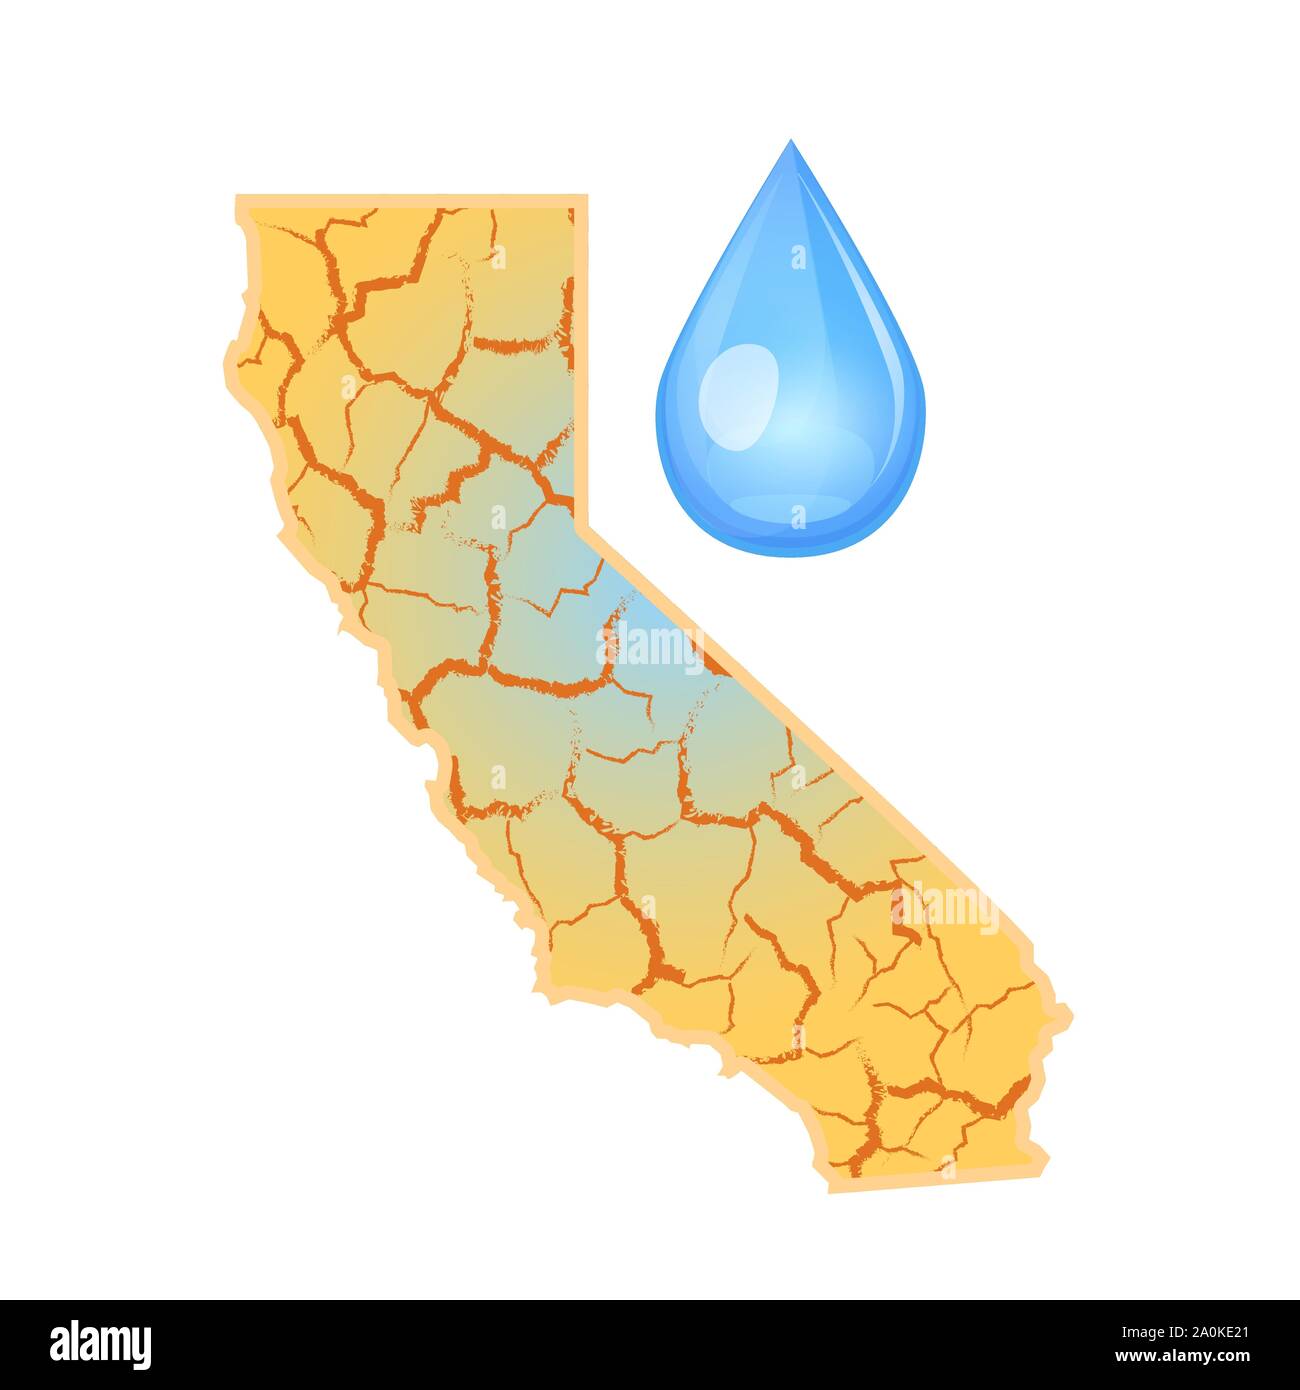 La Californie a besoin d'eau. La rareté de l'eau concept global. La sécheresse en Californie et une goutte d'eau. En cas de catastrophe naturelle. Illustration vectorielle, isolé sur fond blanc. Illustration de Vecteur